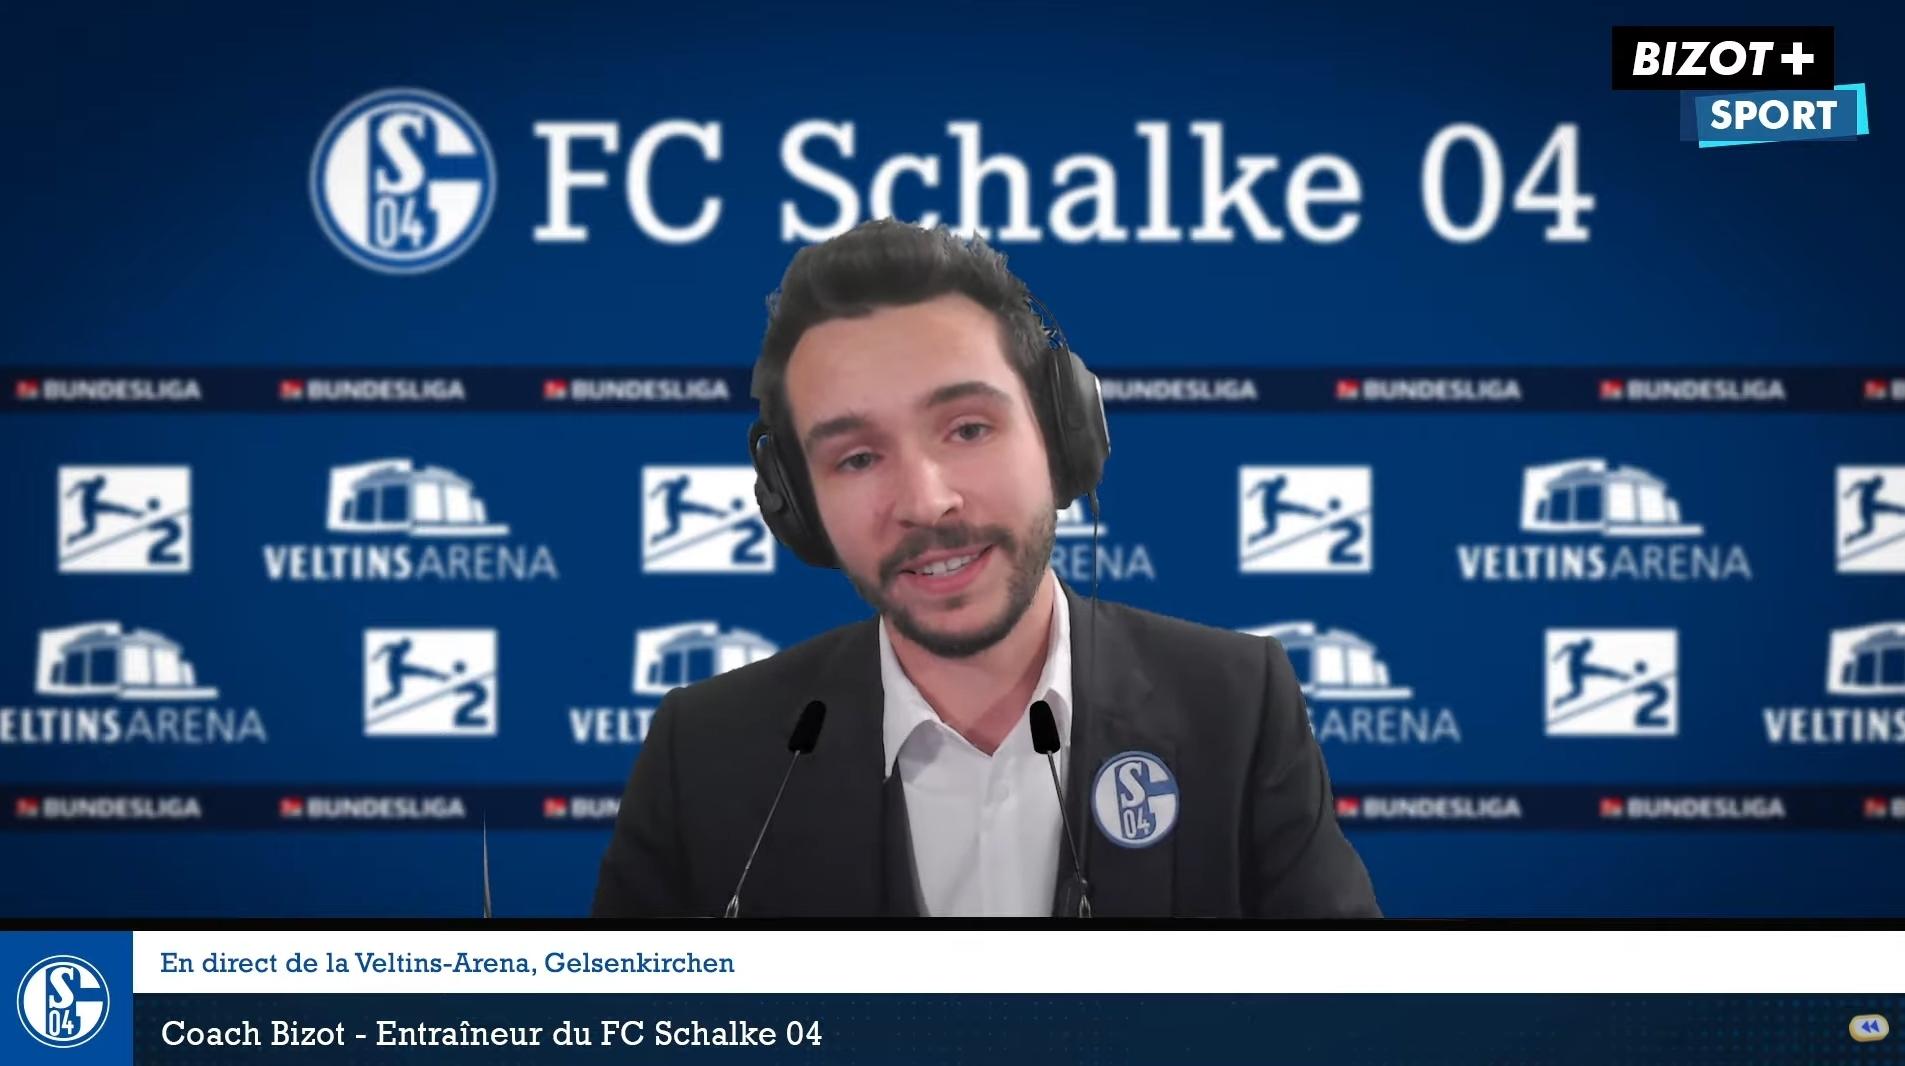 Domingo Schalke 04